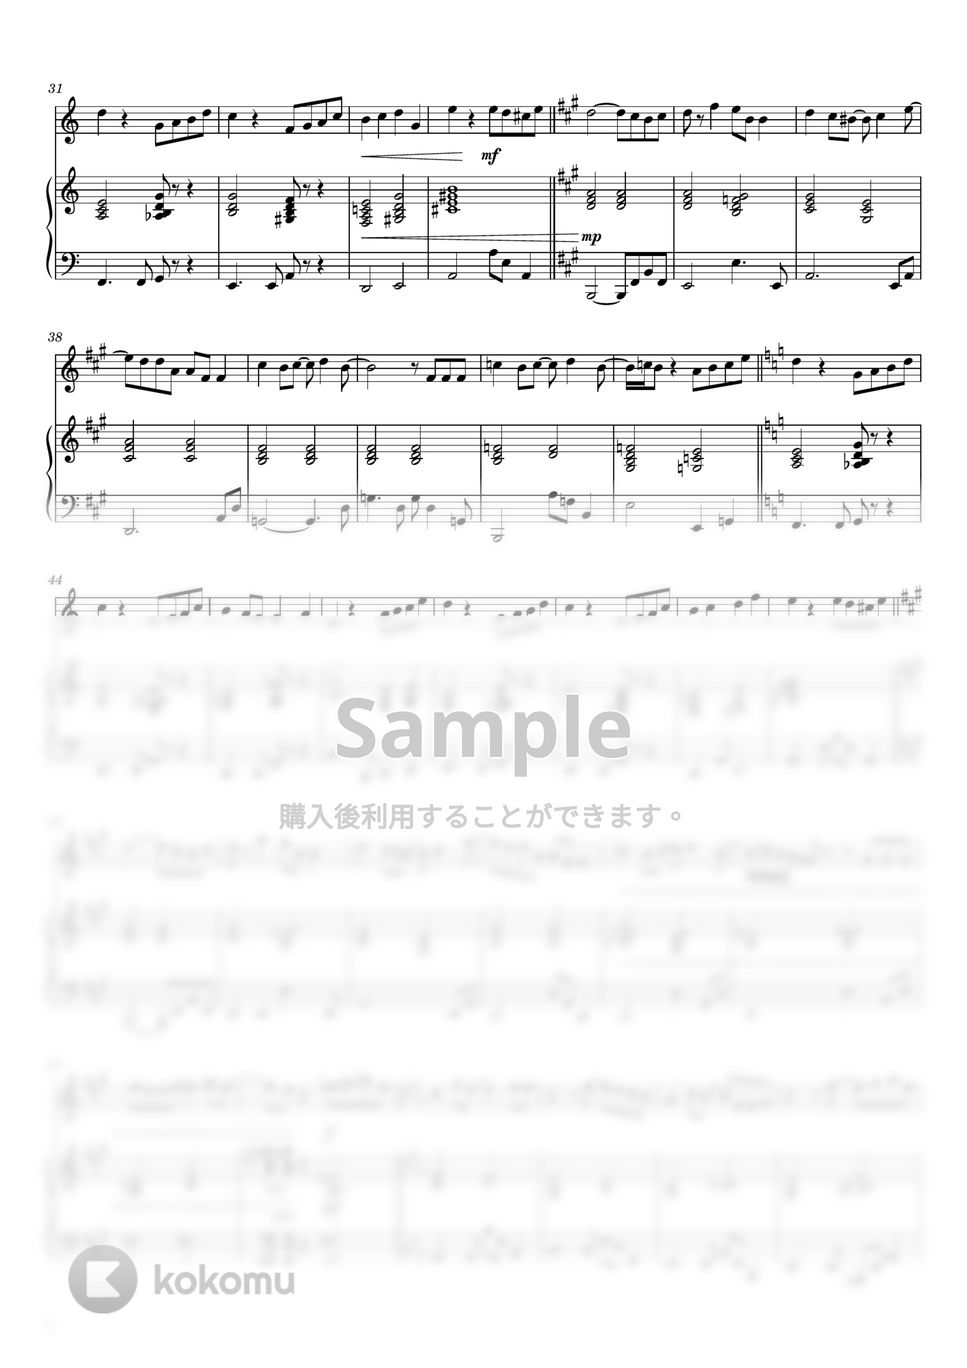 藤井 風 - 優しさ (フルート&ピアノ伴奏) by PiaFlu